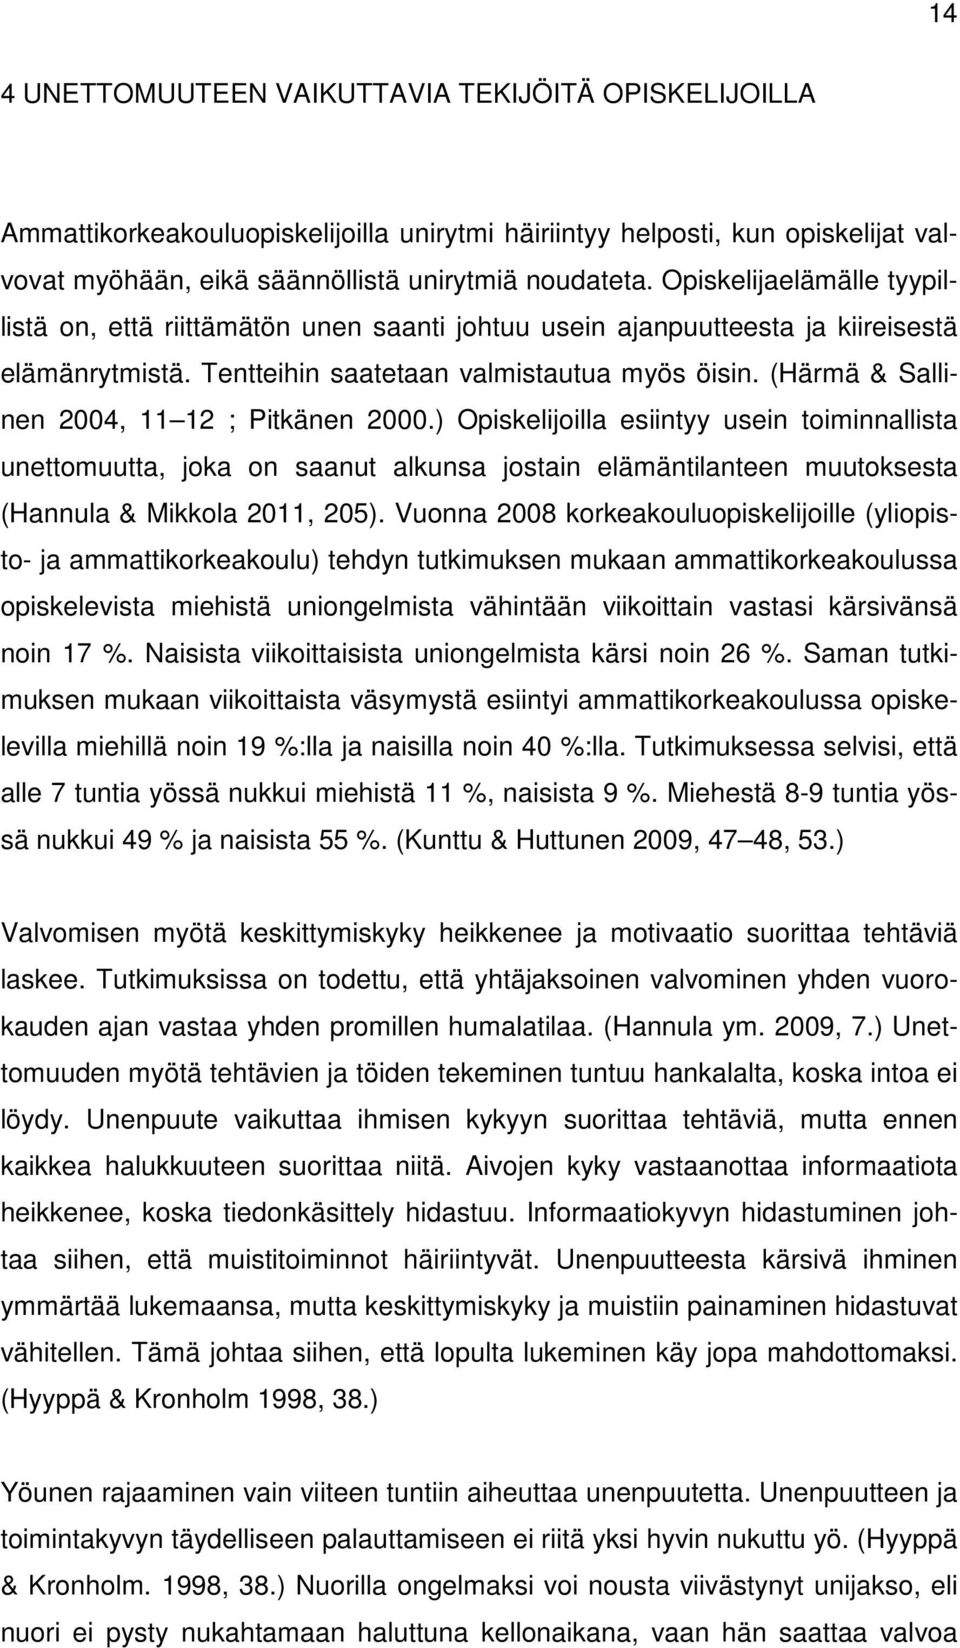 (Härmä & Sallinen 2004, 11 12 ; Pitkänen 2000.) Opiskelijoilla esiintyy usein toiminnallista unettomuutta, joka on saanut alkunsa jostain elämäntilanteen muutoksesta (Hannula & Mikkola 2011, 205).